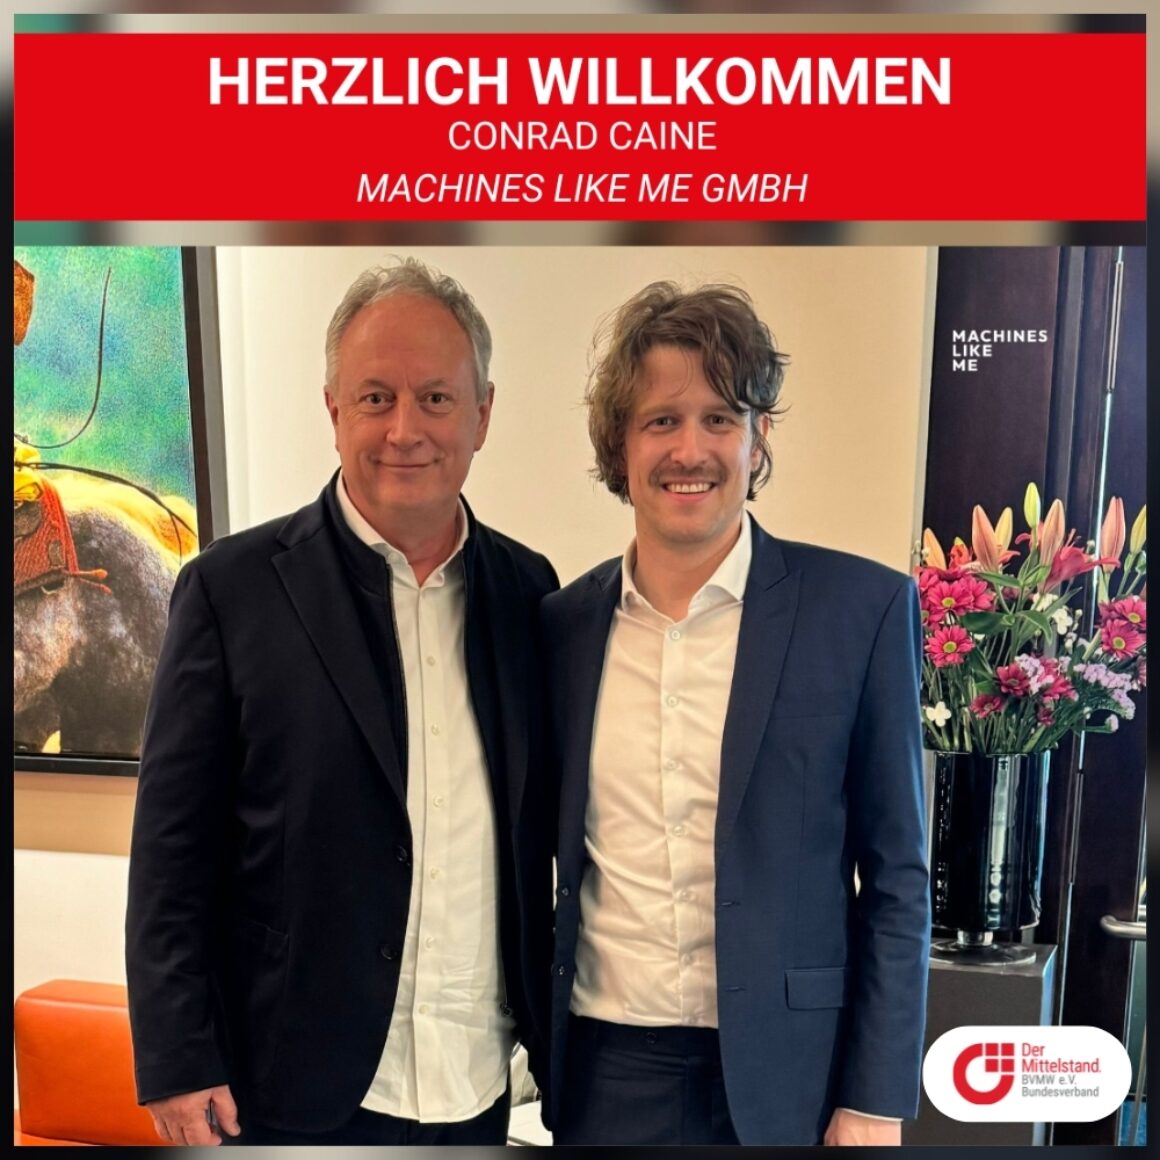 Herzlich willkommen Conrad Caine - Machines like me GmbH